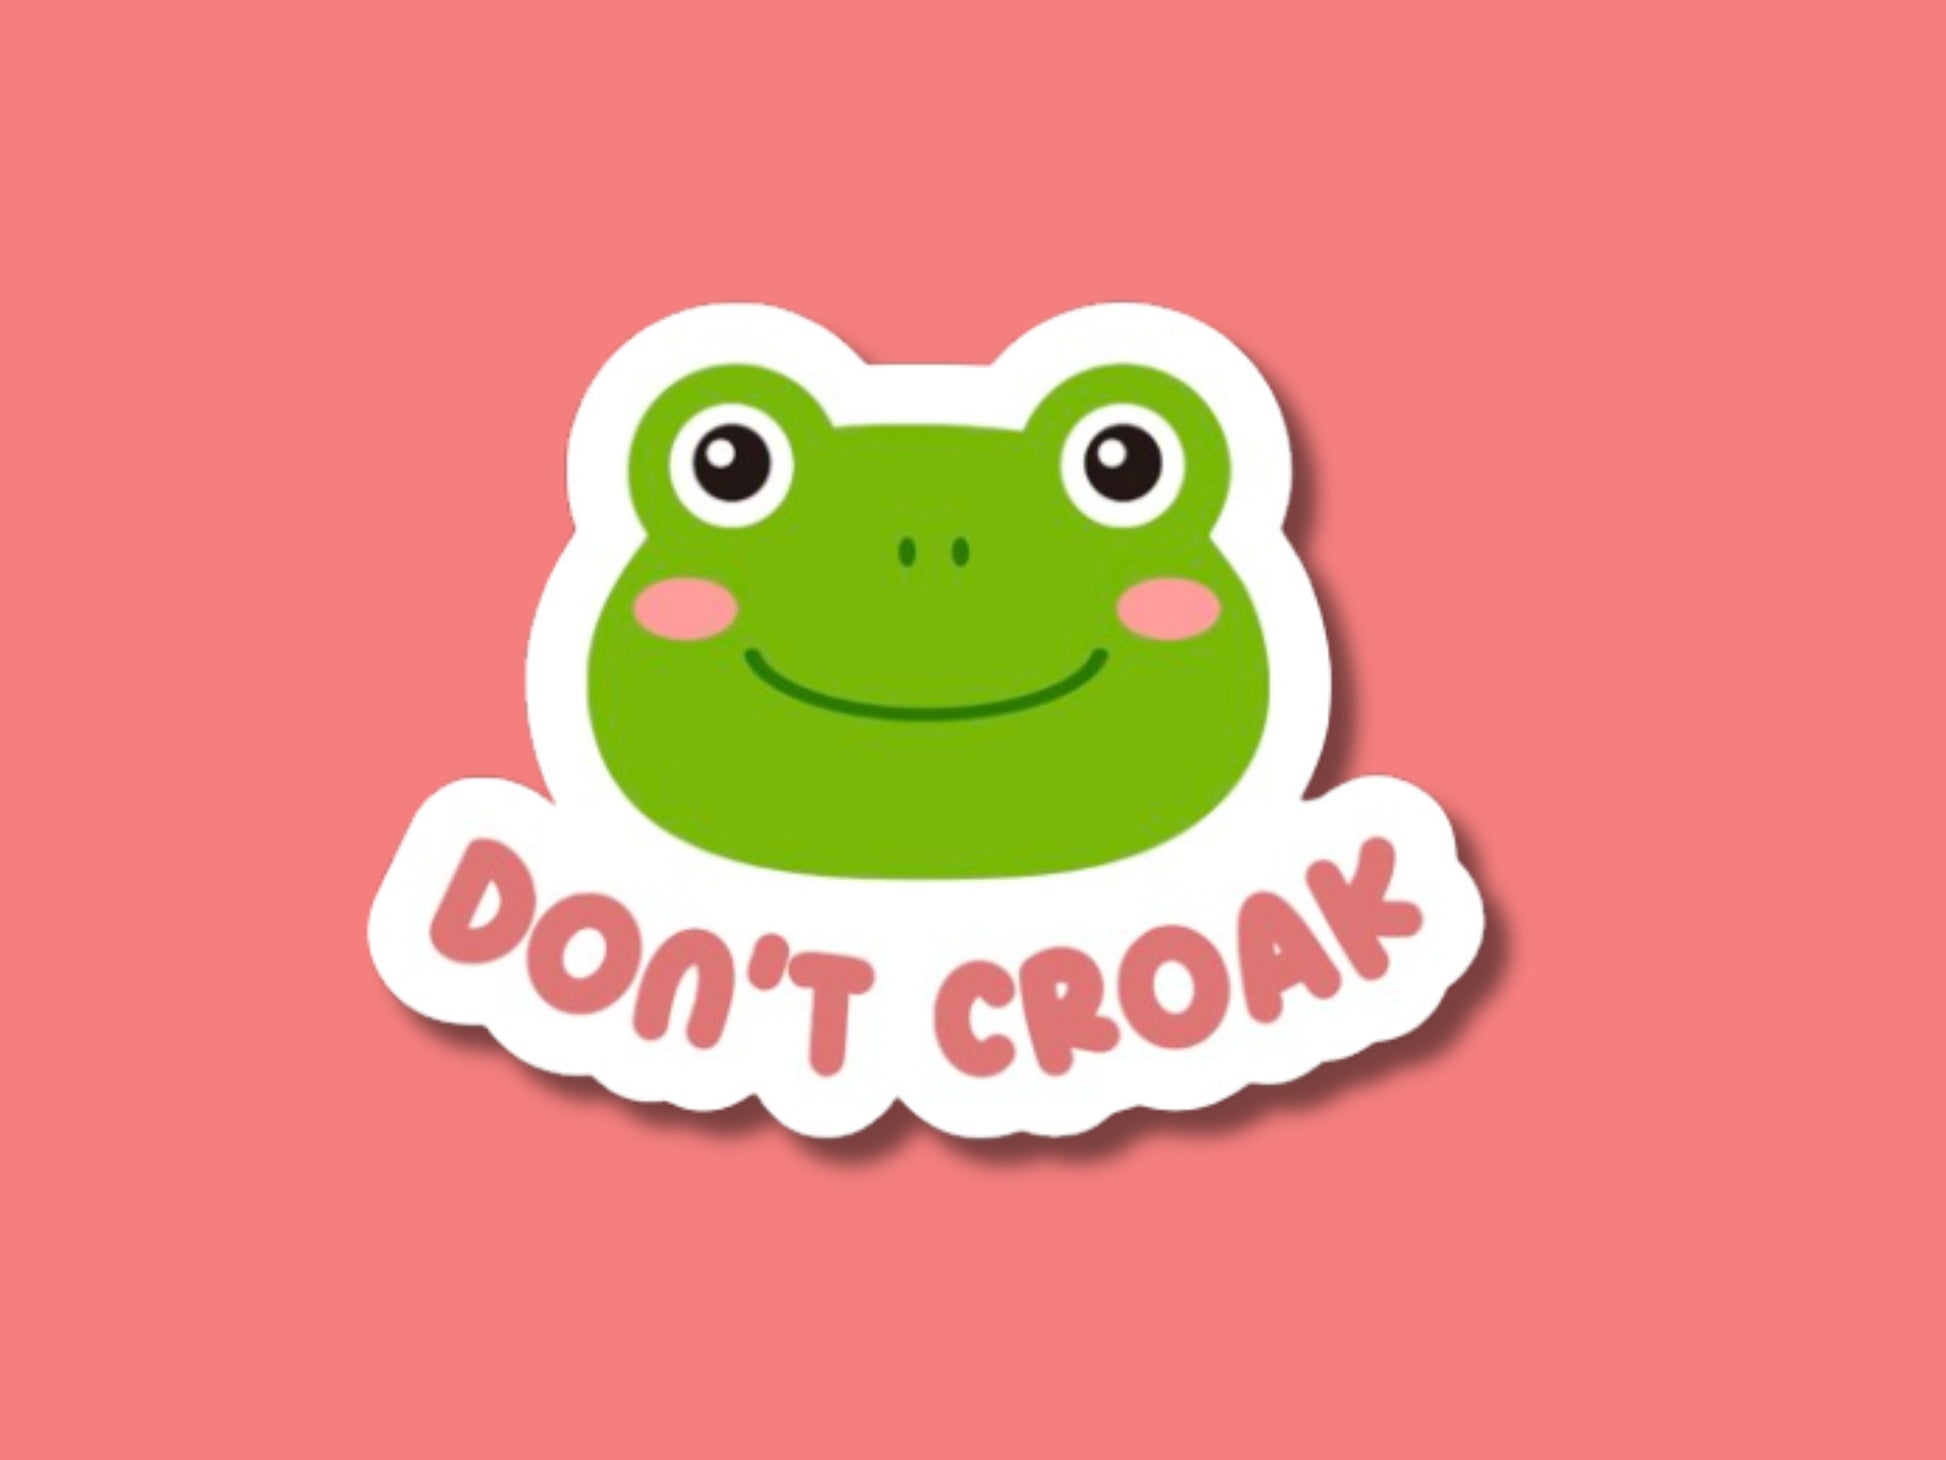 don't croak sticker, nurse sticker, cna sticker, doctor sticker, funny healthcare sticker, frog sticker, er nurse sticker, but did you die